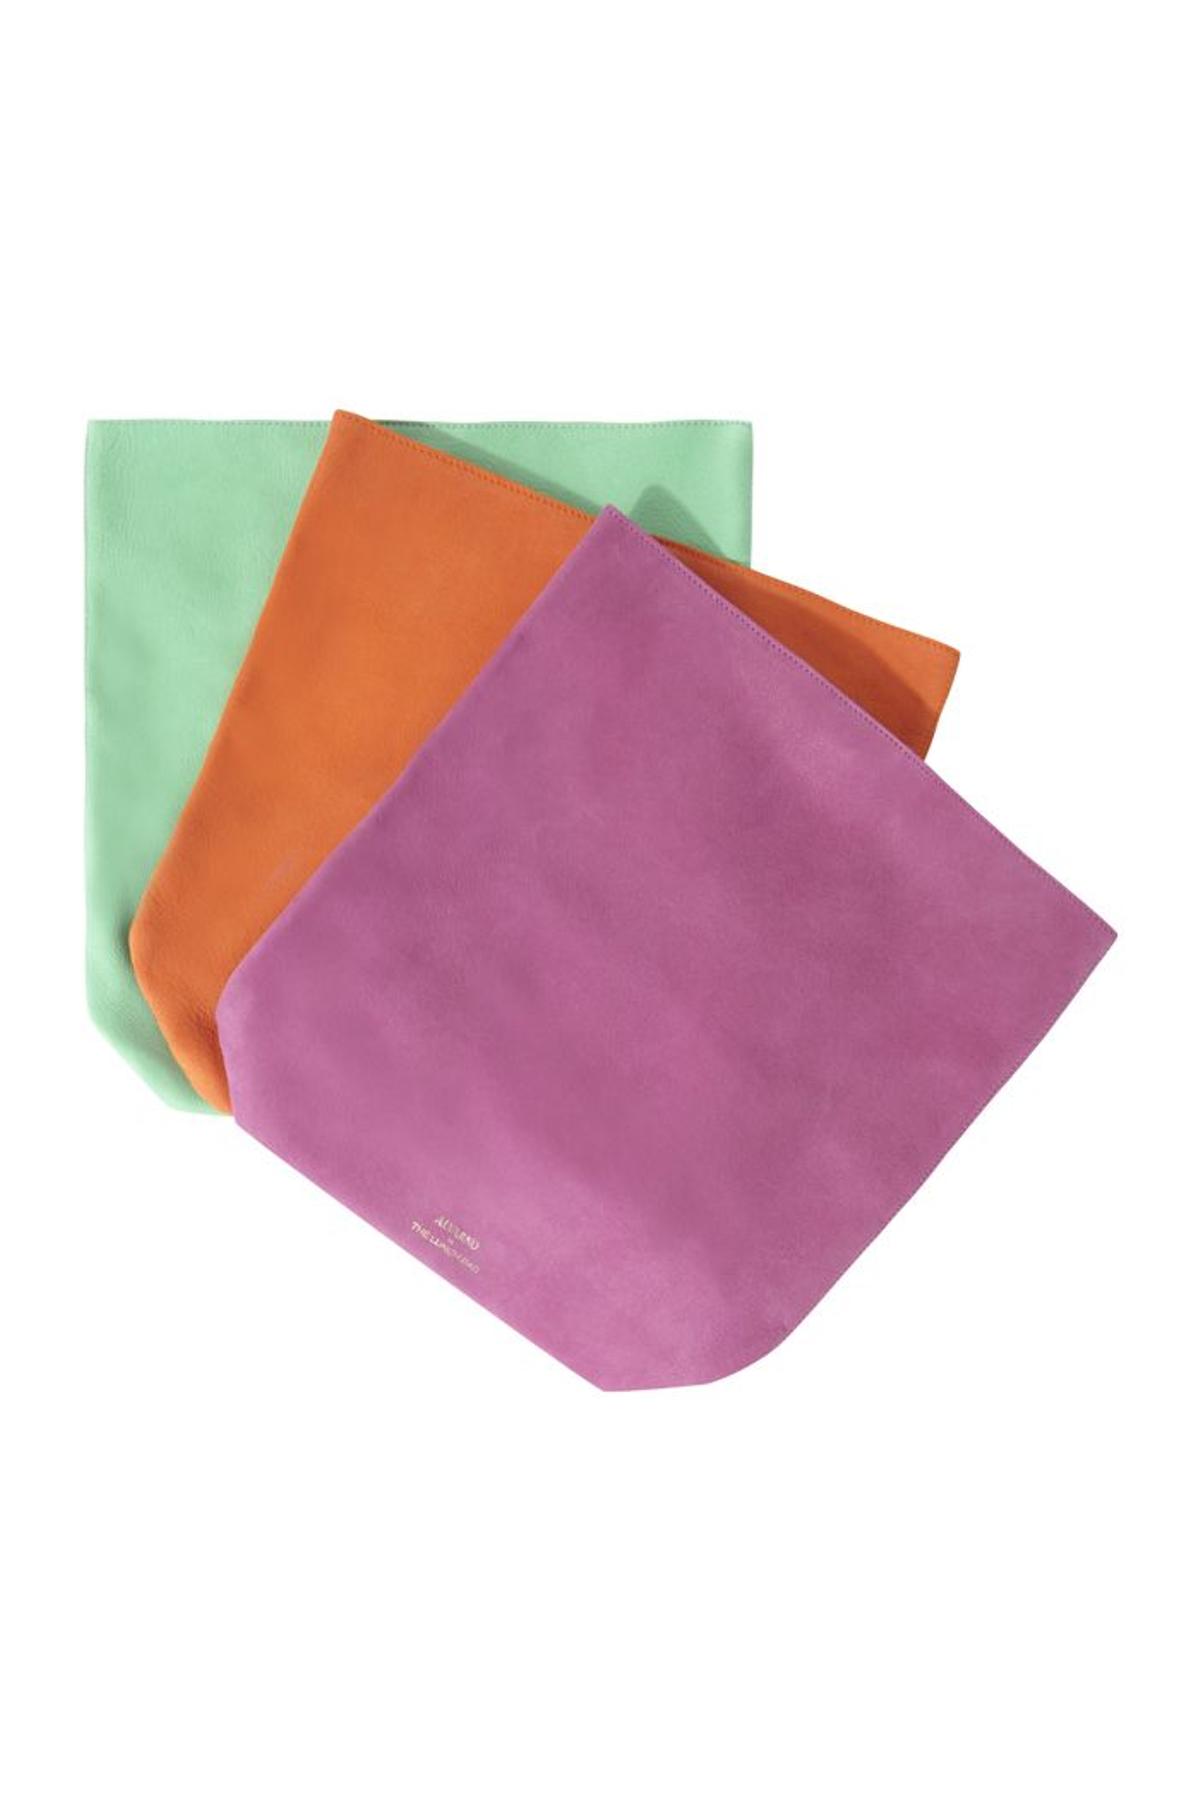 Alvarno by The Lunch Bag, clutch en varios colores